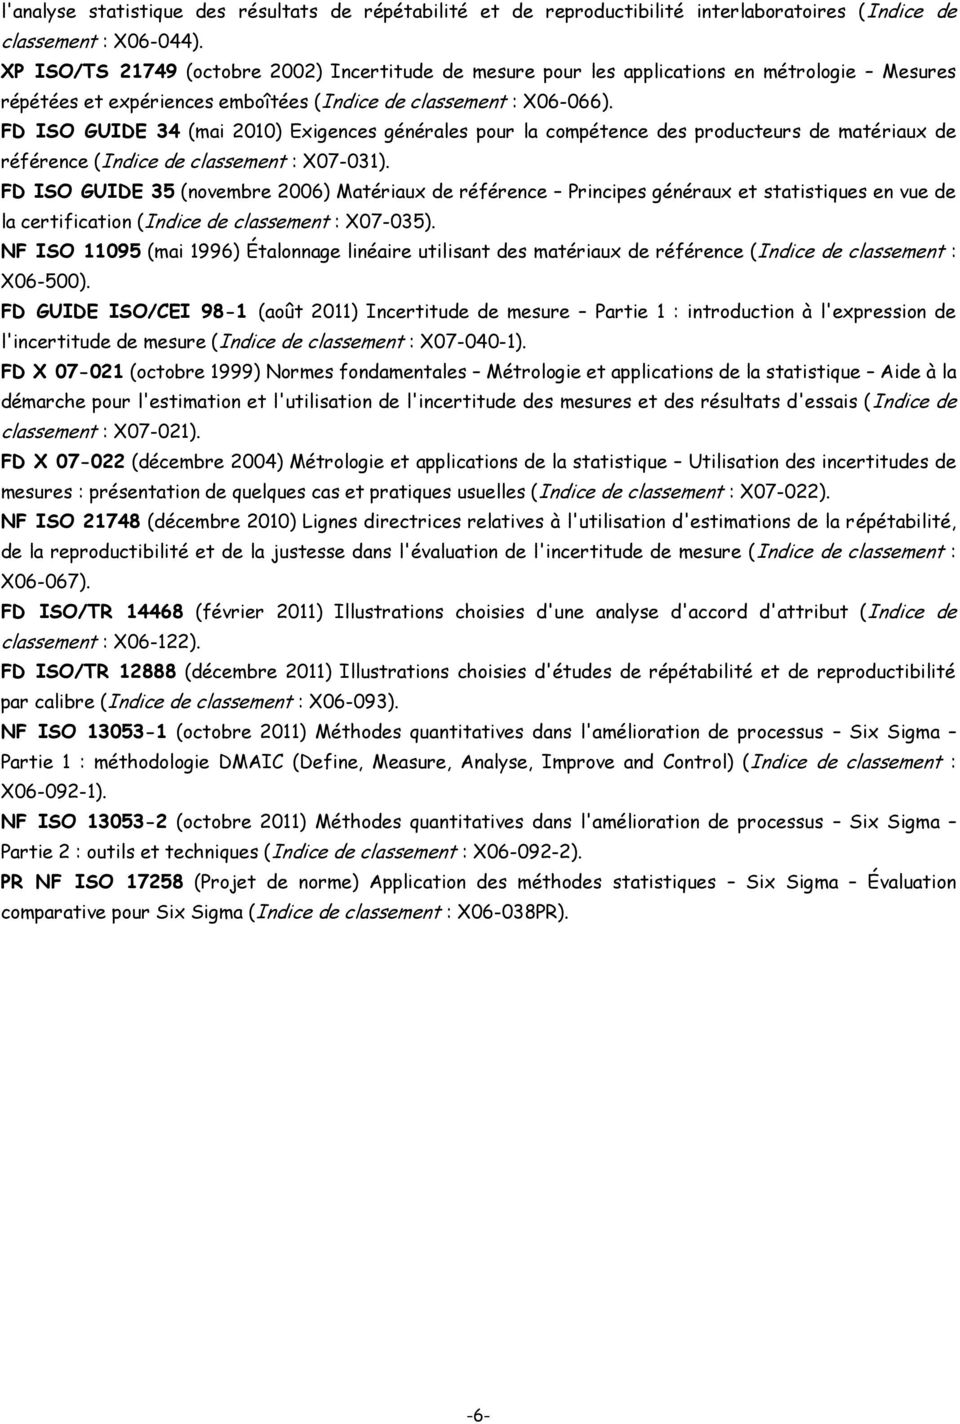 FD ISO GUIDE 34 (mai 2010) Exigences générales pour la compétence des producteurs de matériaux de référence (Indice de classement : X07-031).